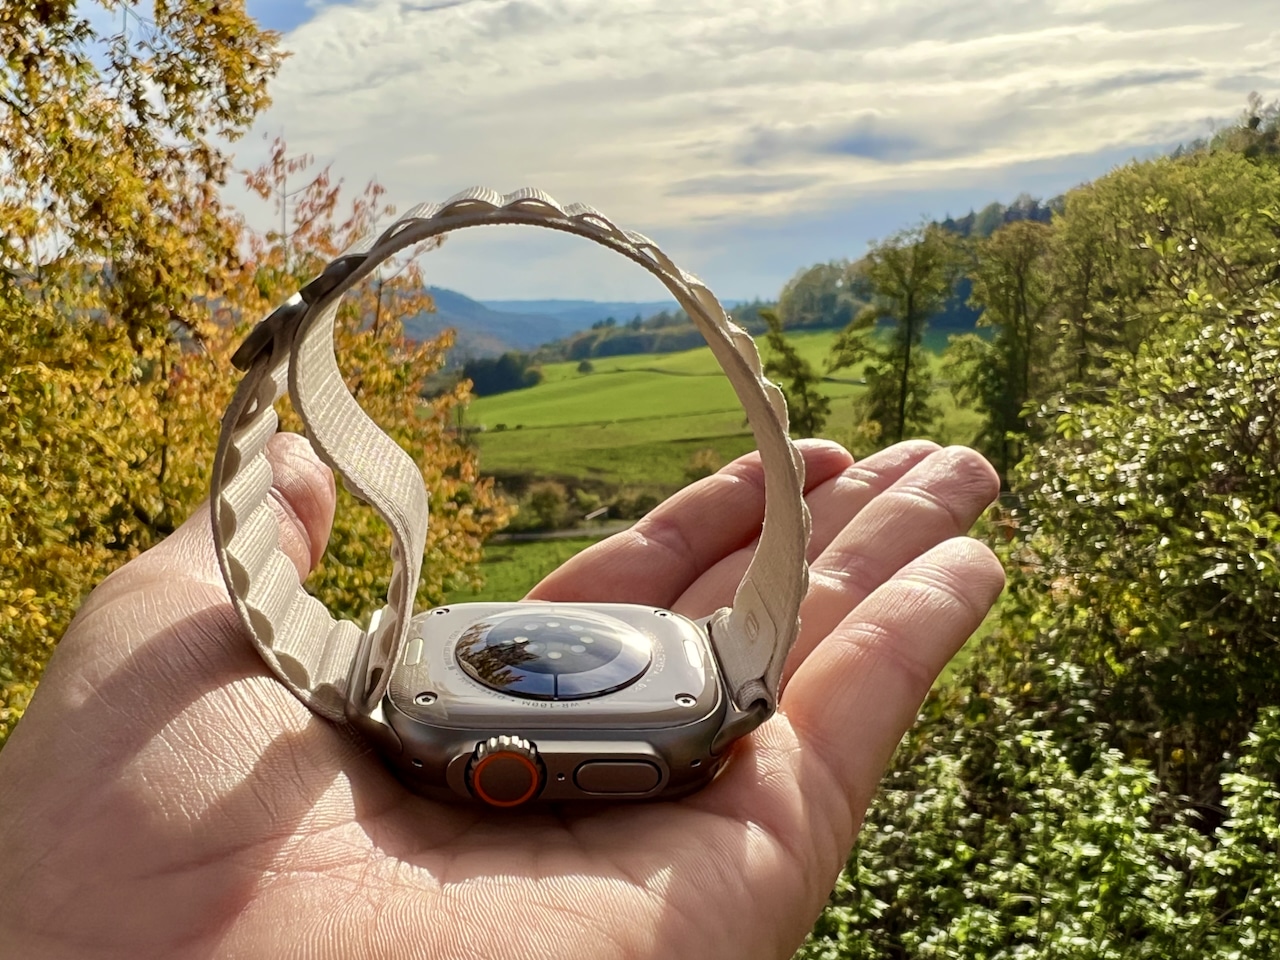 Apple Watch Wandern Erfahrungsbericht – Smartwatch für Outdoor-Fans?